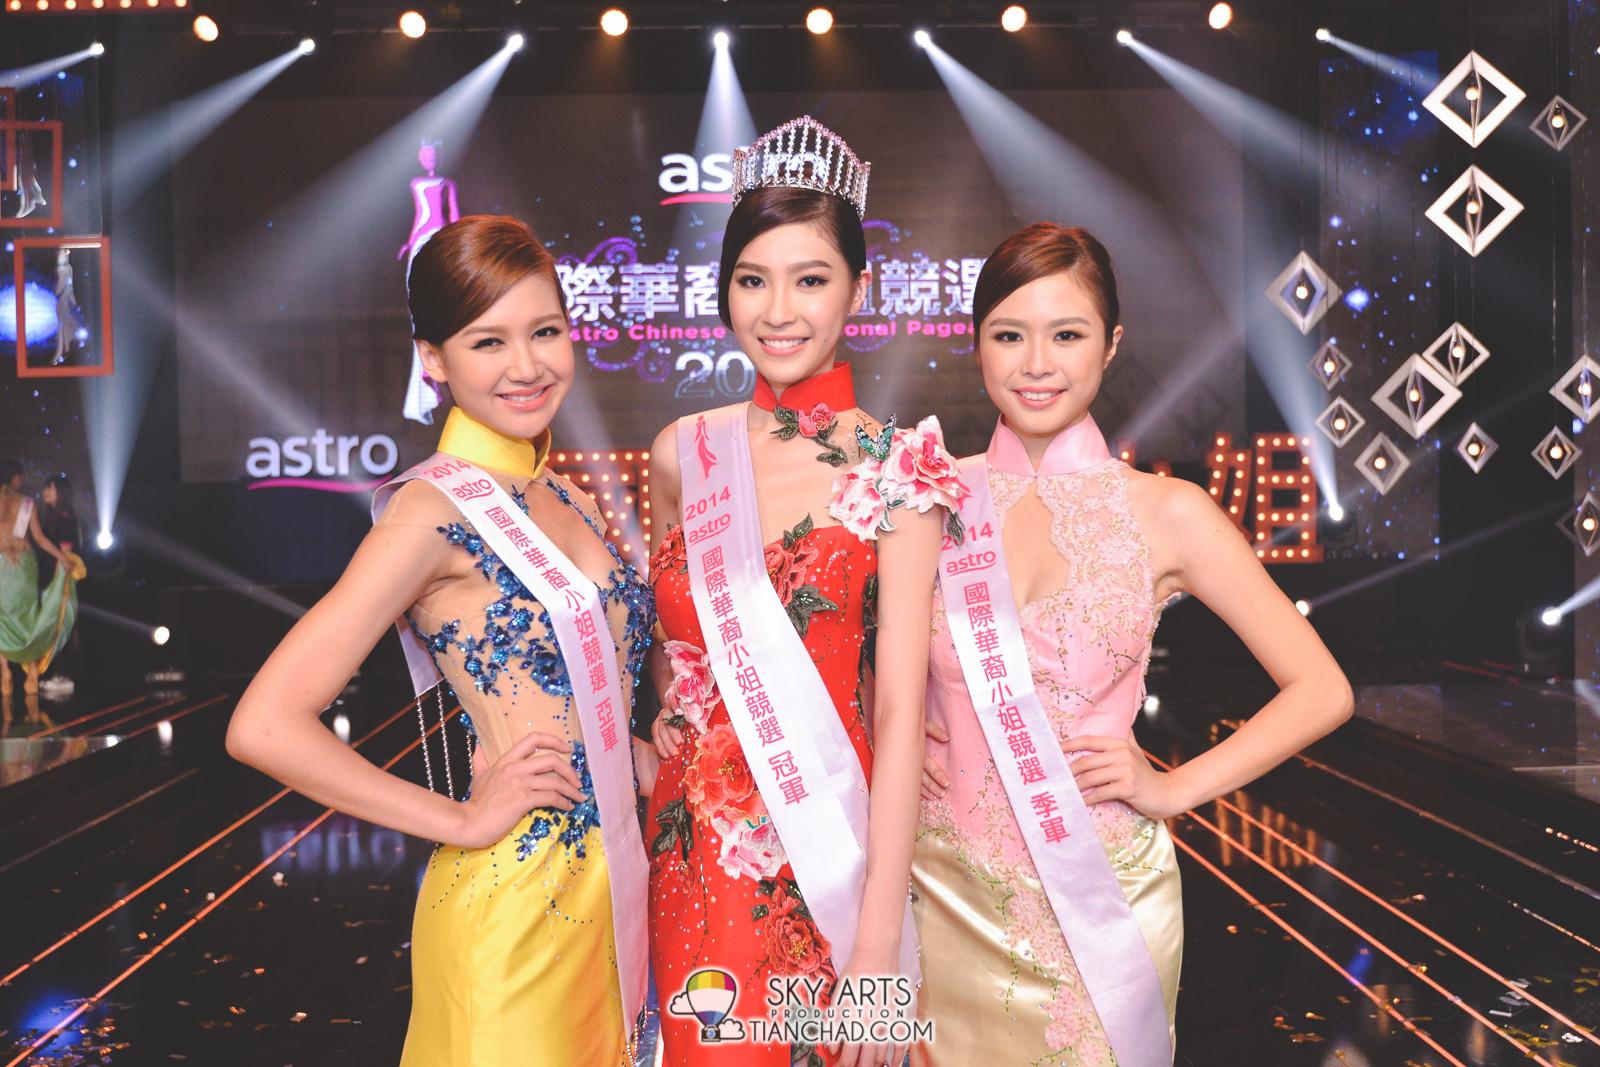  [左至右] Astro国际华裔小姐竞选2014 - 亚军Trisha郭秀文, 冠军Anjoe许愫恩与季军Grace钟欣燕